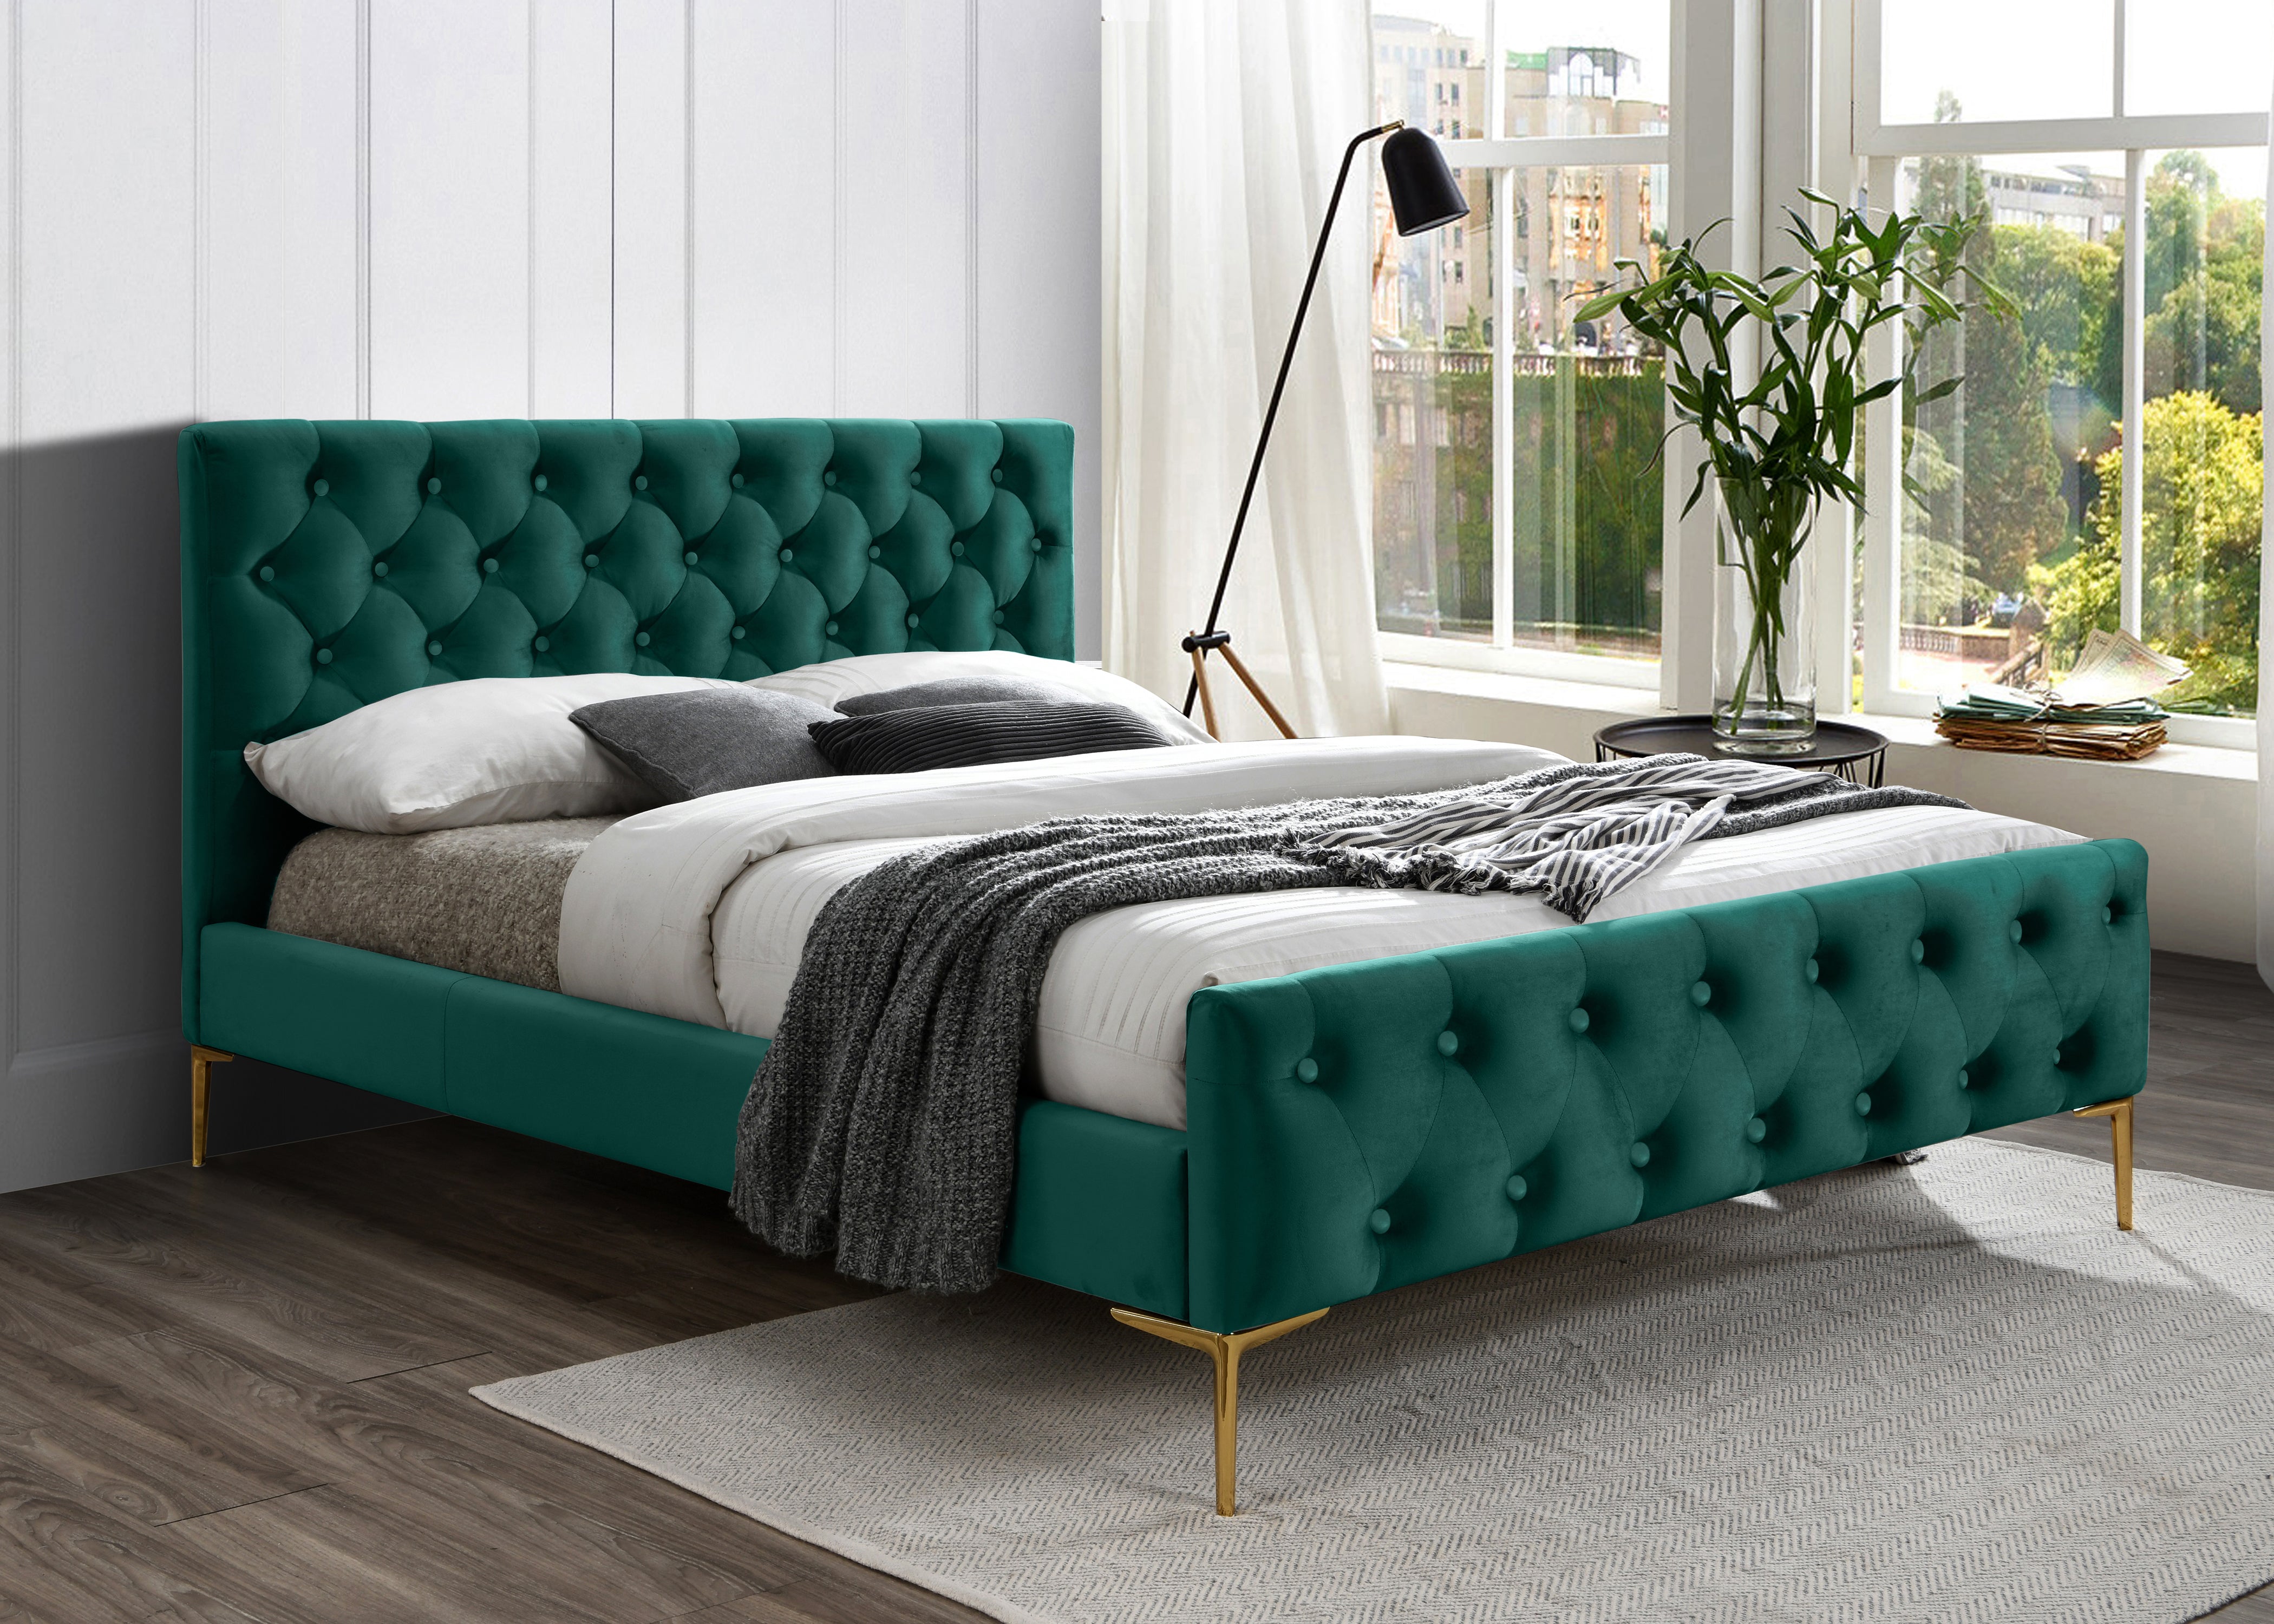 France Upholstered Platform Bed - Queen size, Green